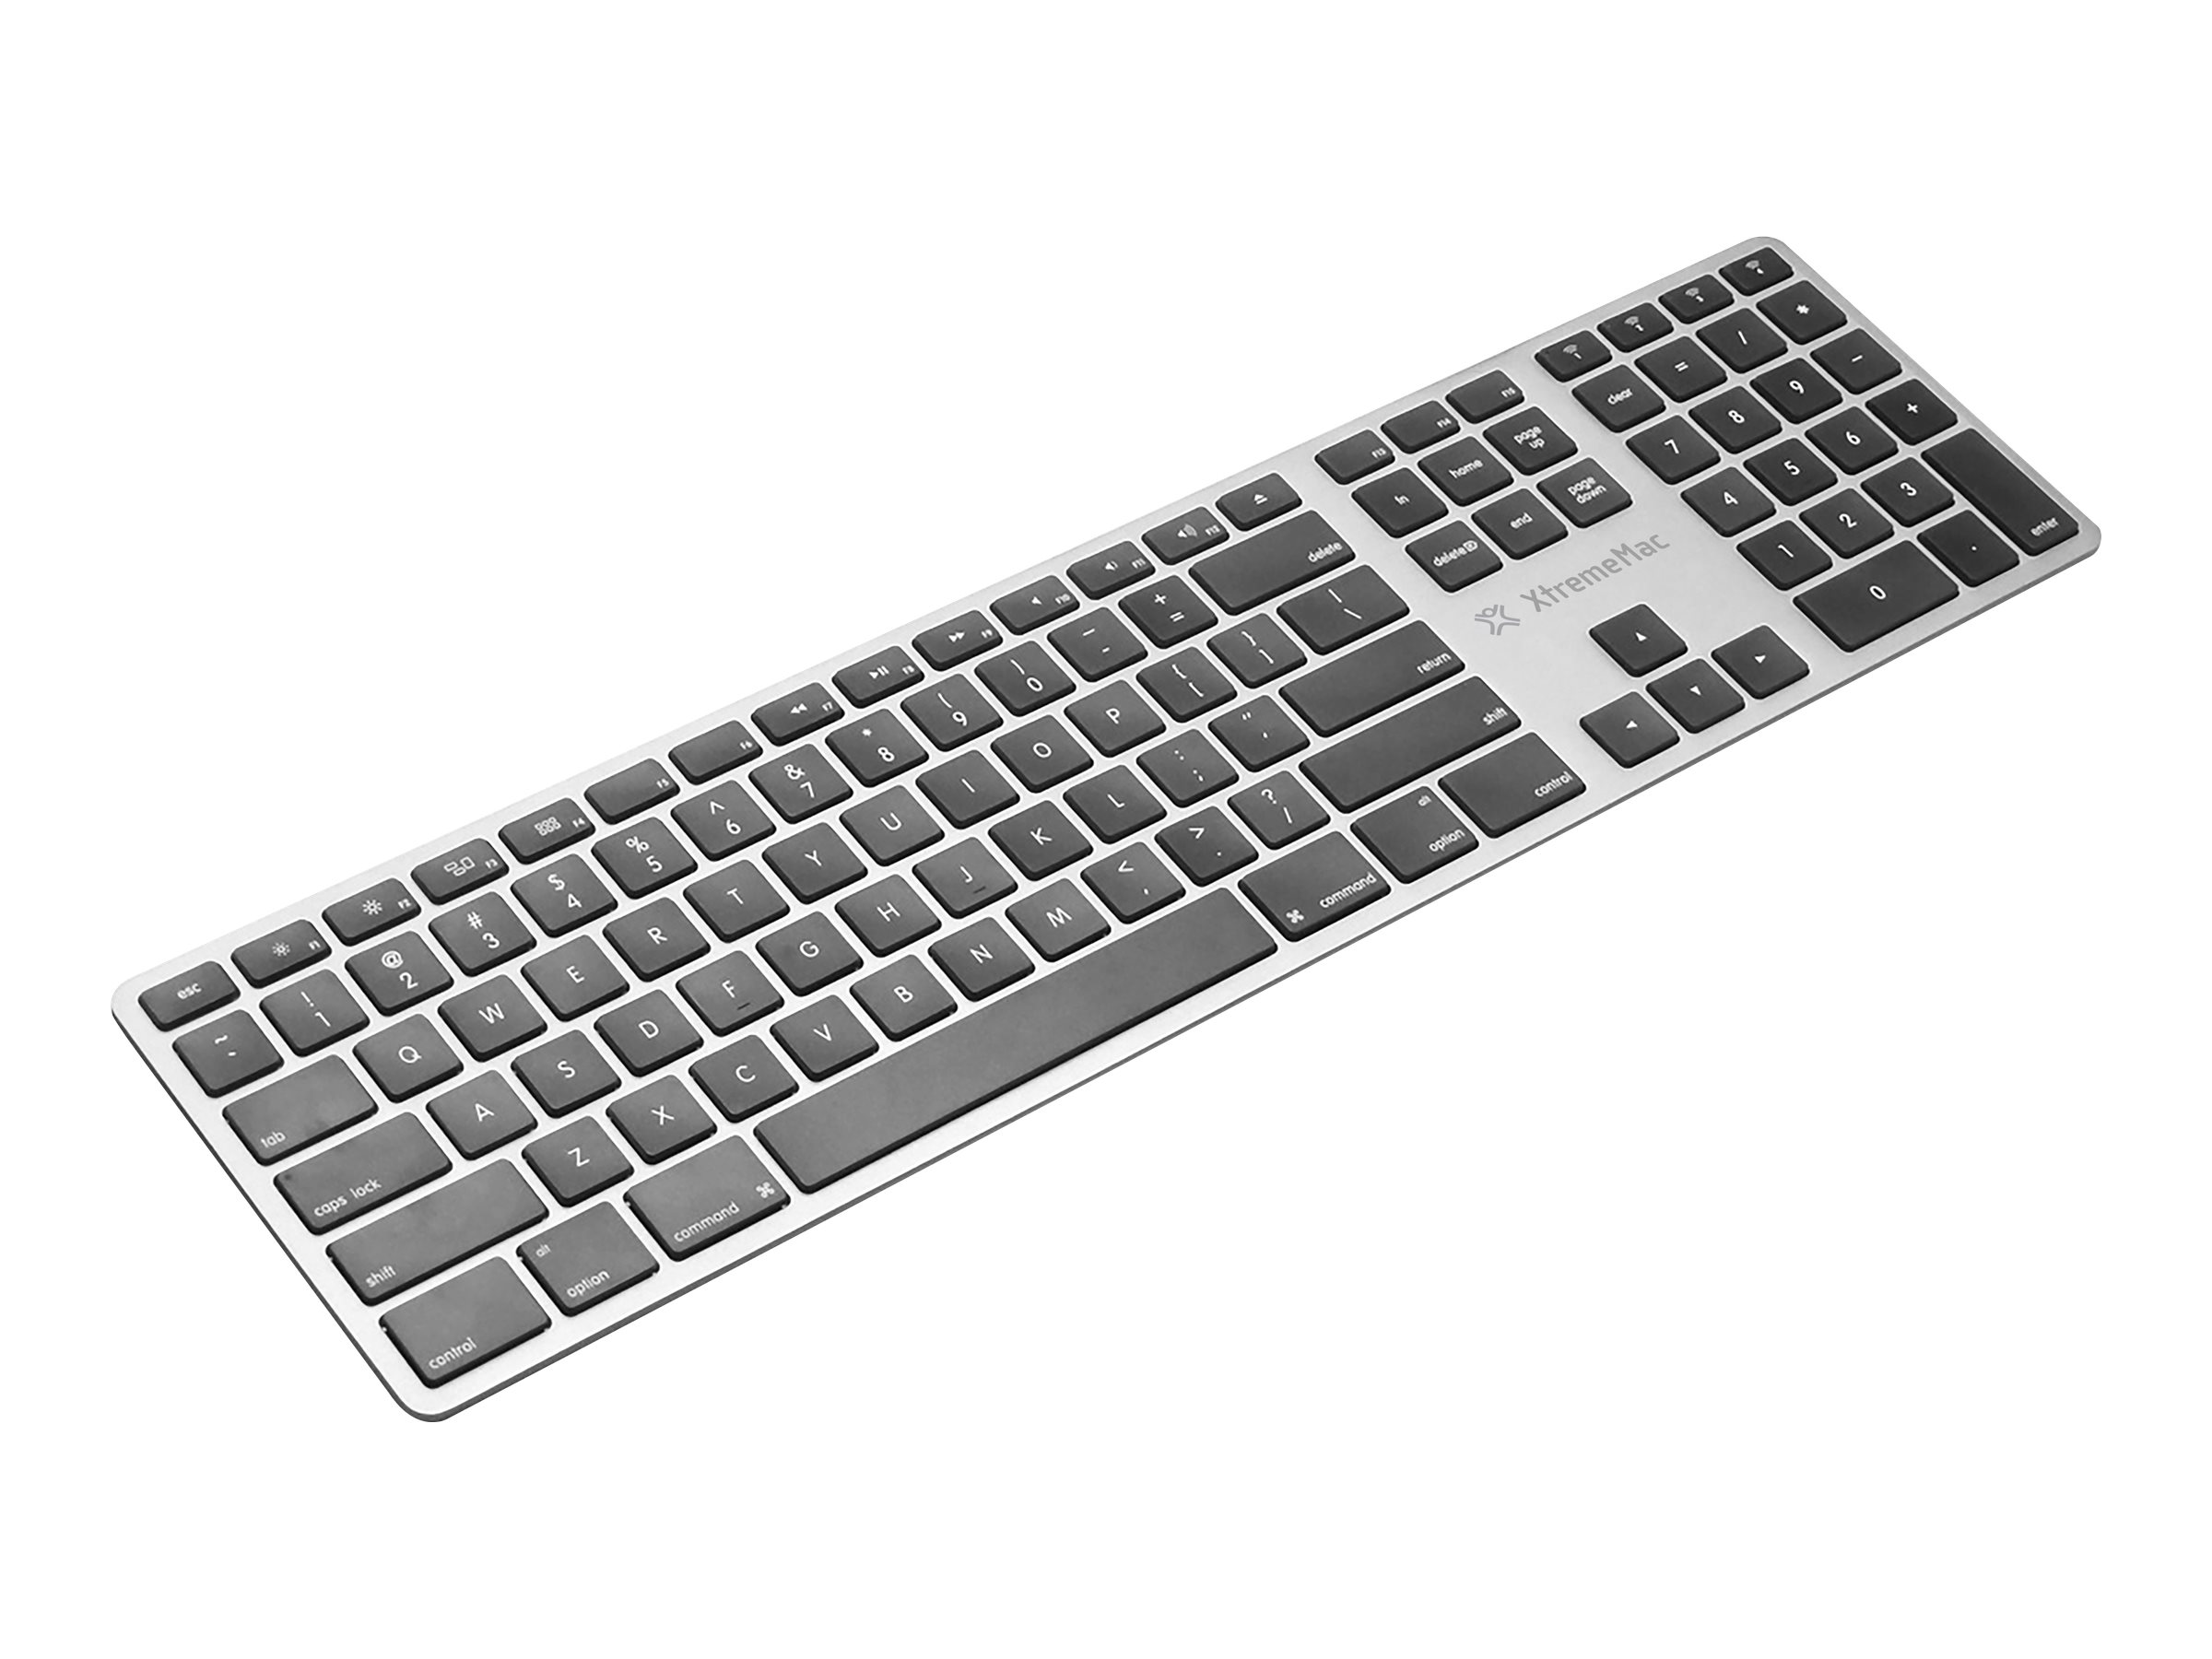 XtremeMac Multi Device - clavier sans fil Azerty pour Mac - ultra plat